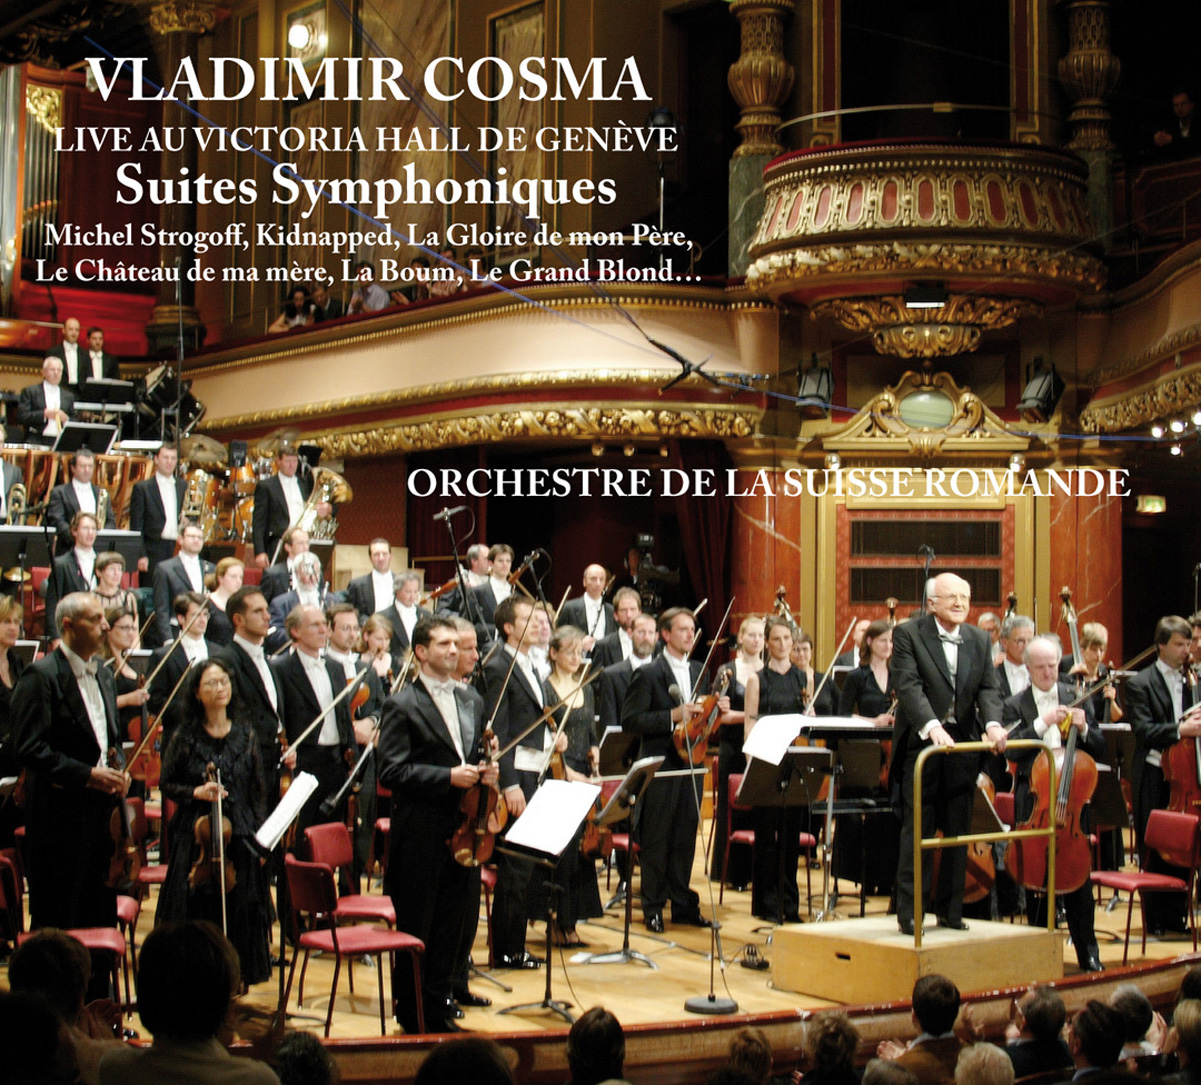 Vladimir Cosma – Suites Symphoniques<br>Live au Victoria Hall de Genève